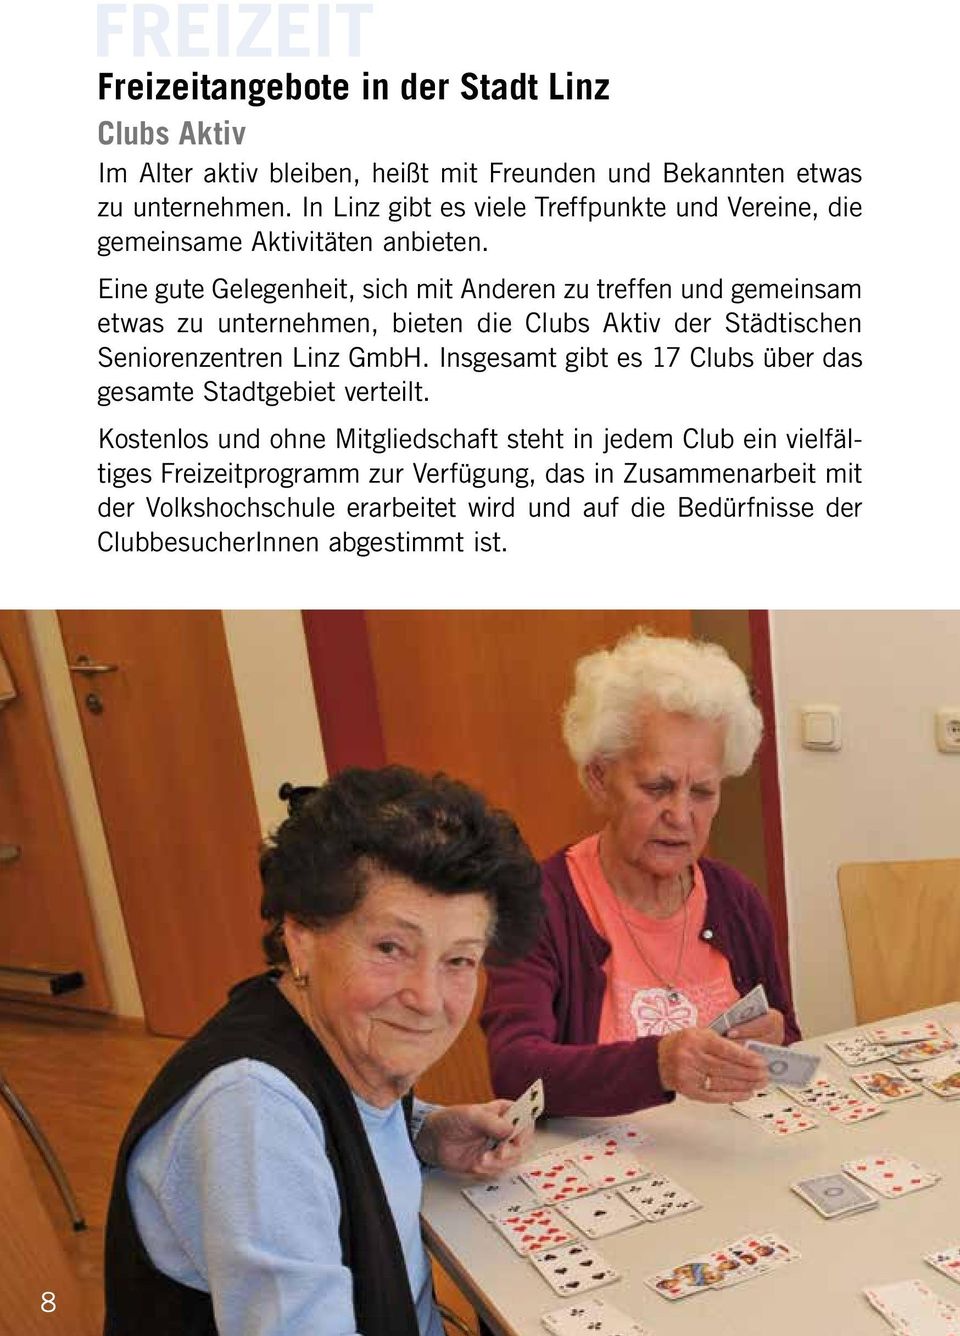 Eine gute Gelegenheit, sich mit Anderen zu treffen und gemeinsam etwas zu unternehmen, bieten die Clubs Aktiv der Städtischen Seniorenzentren Linz GmbH.